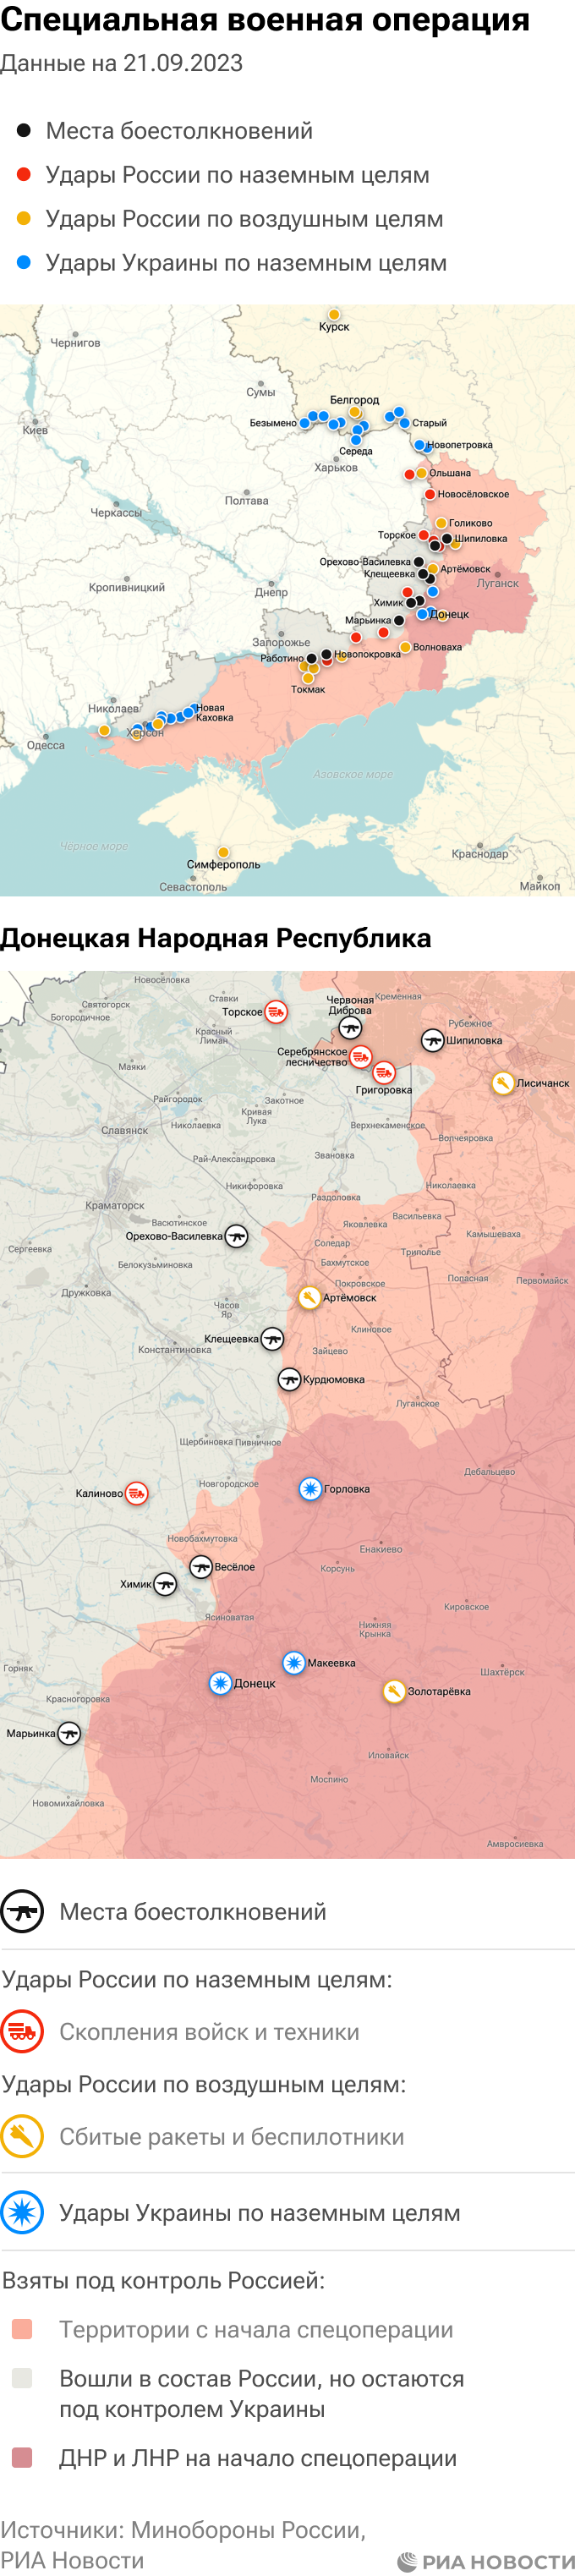 Спецоперация на украине карта действий на сегодня